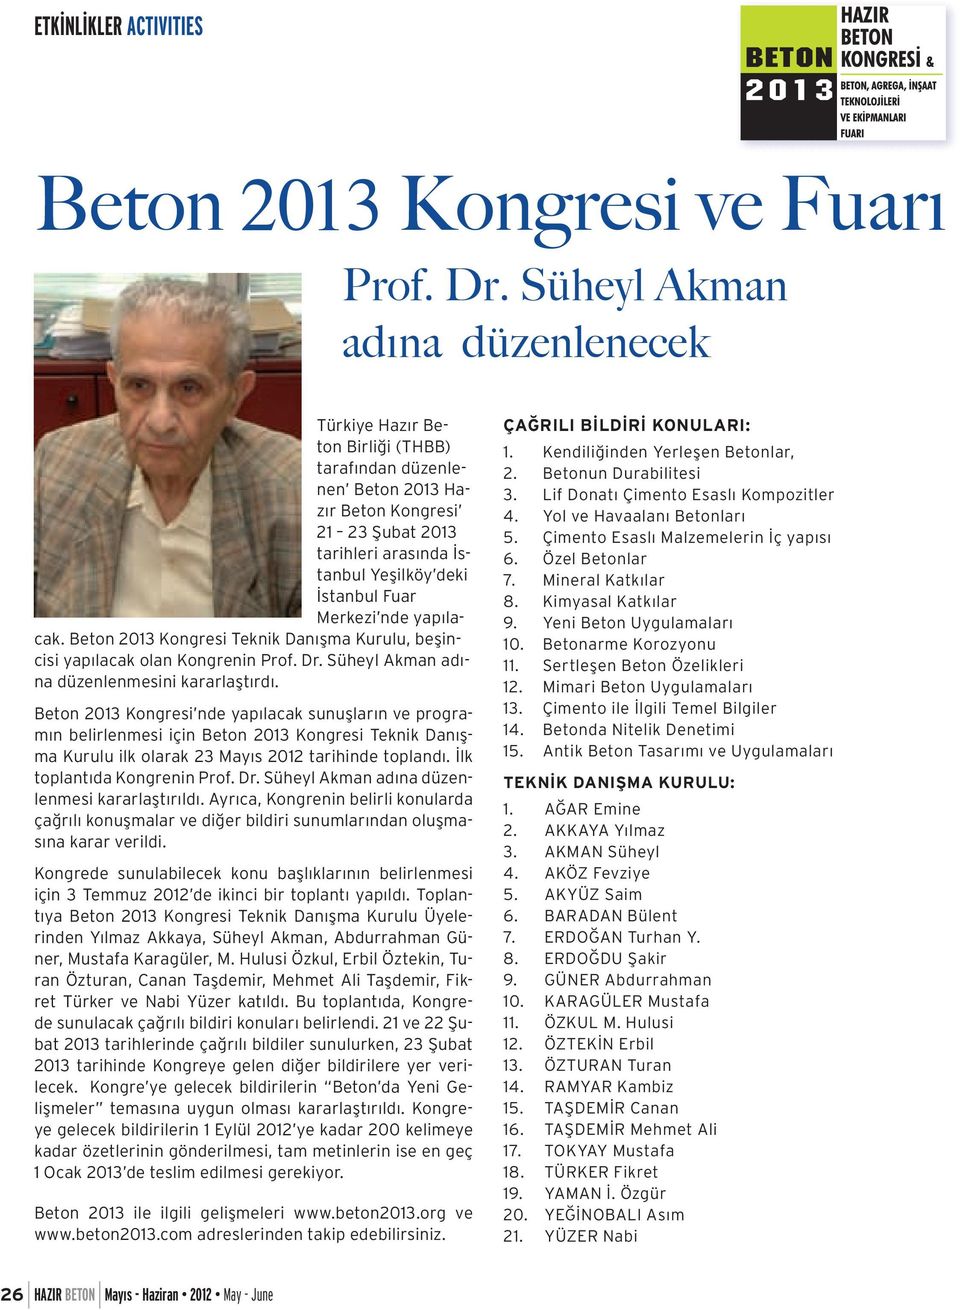 Merkezi nde yapılacak. Beton 2013 Kongresi Teknik Danışma Kurulu, beşincisi yapılacak olan Kongrenin Prof. Dr. Süheyl Akman adına düzenlenmesini kararlaştırdı.